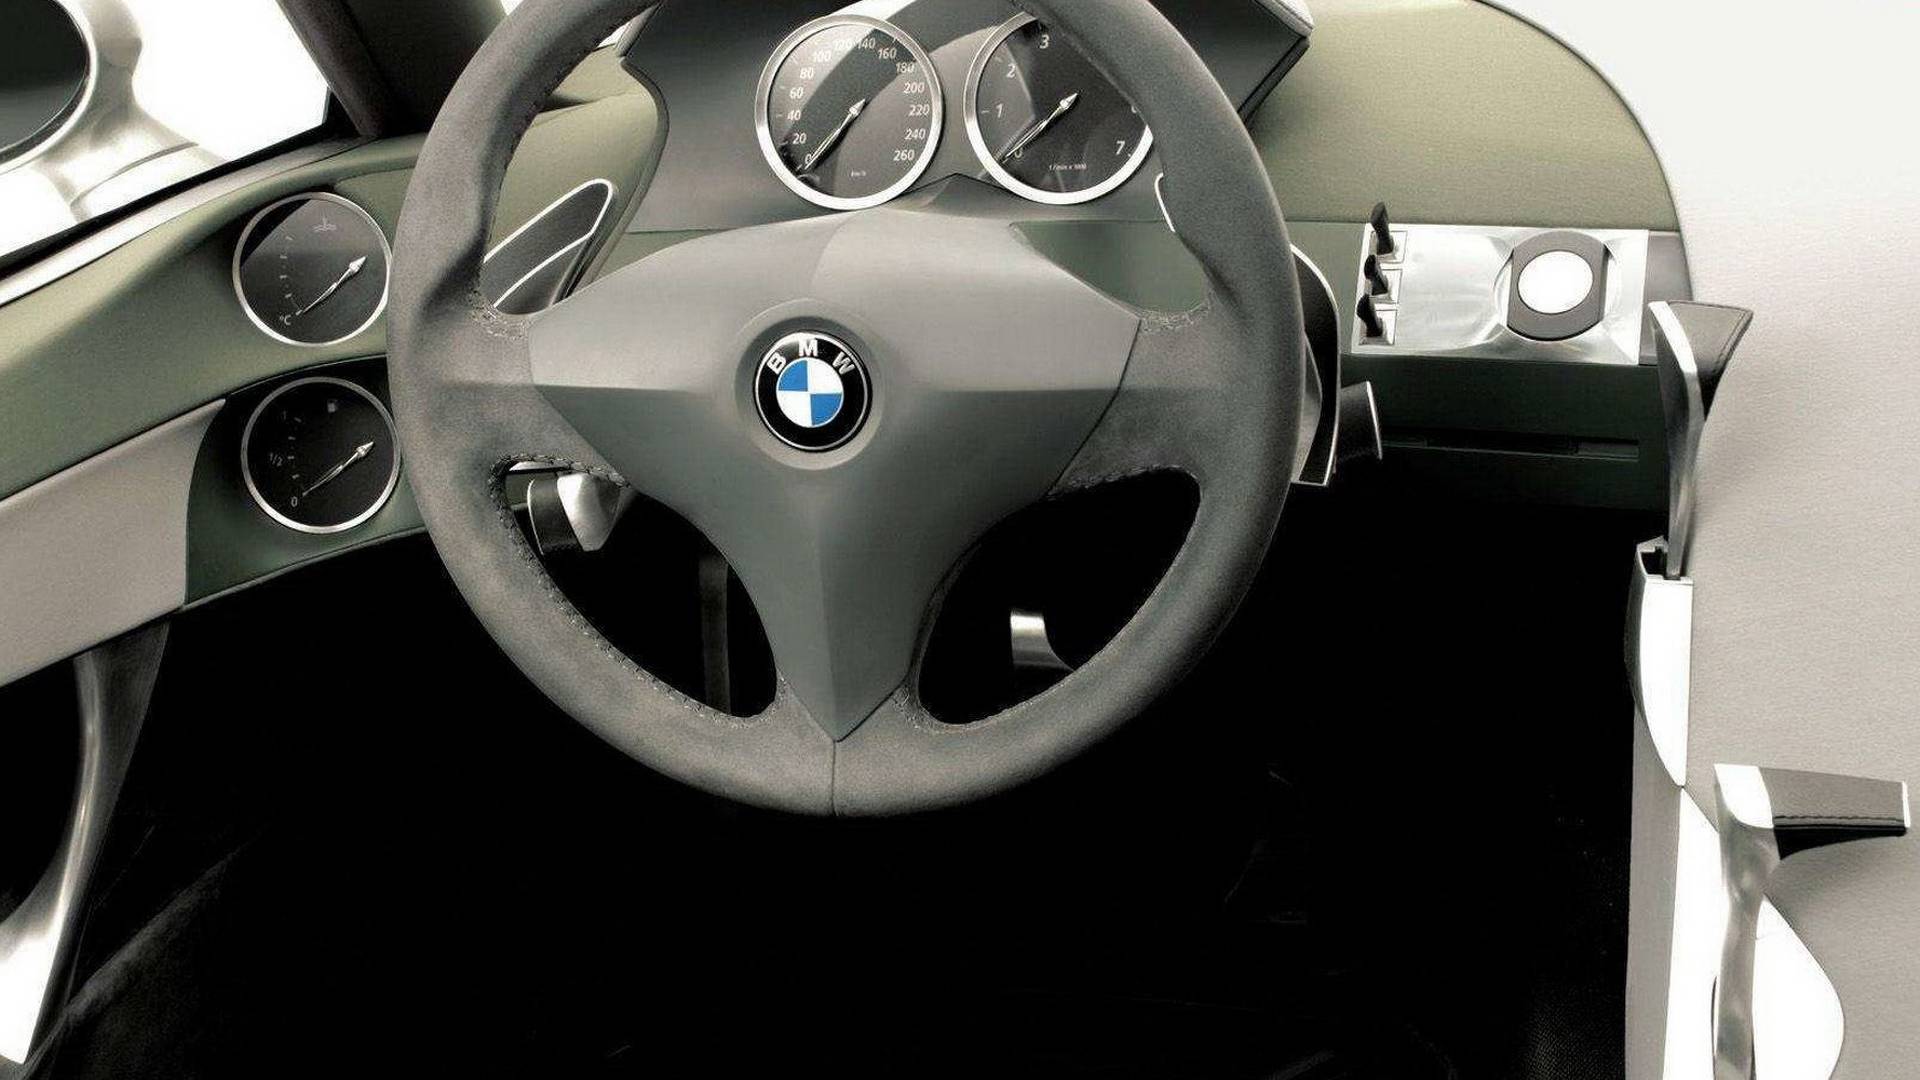 Грозен, но находчив: Това е забравеното BMW X-Coupe